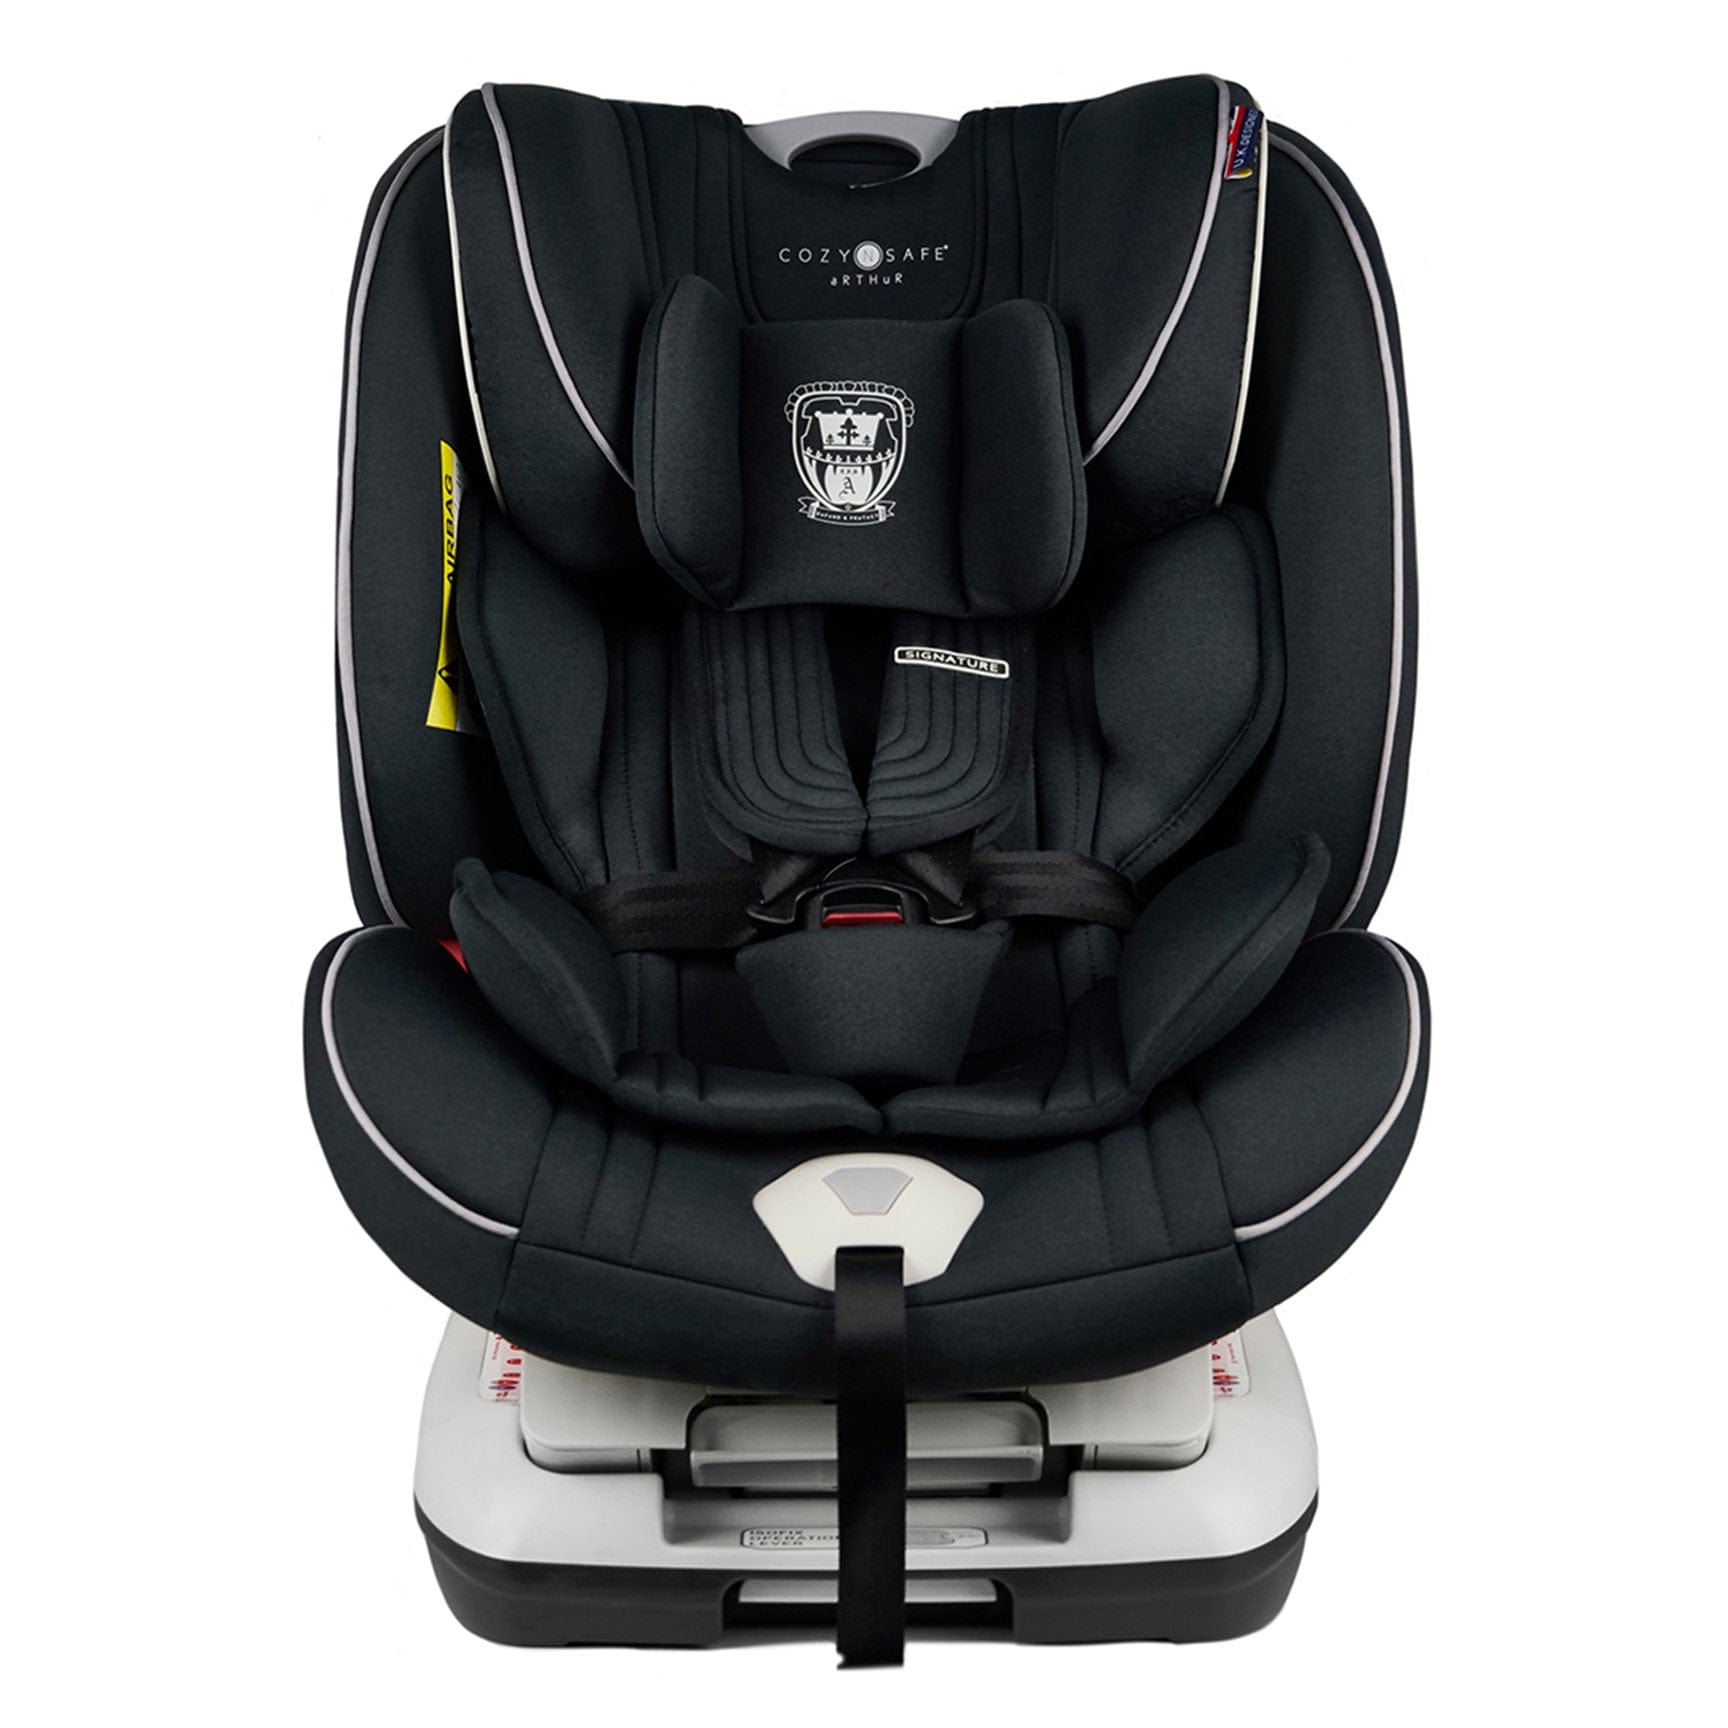 Cozy N Safe Combination Car Seats Cozy N Safe Arthur Car Seat - Onyx EST-528